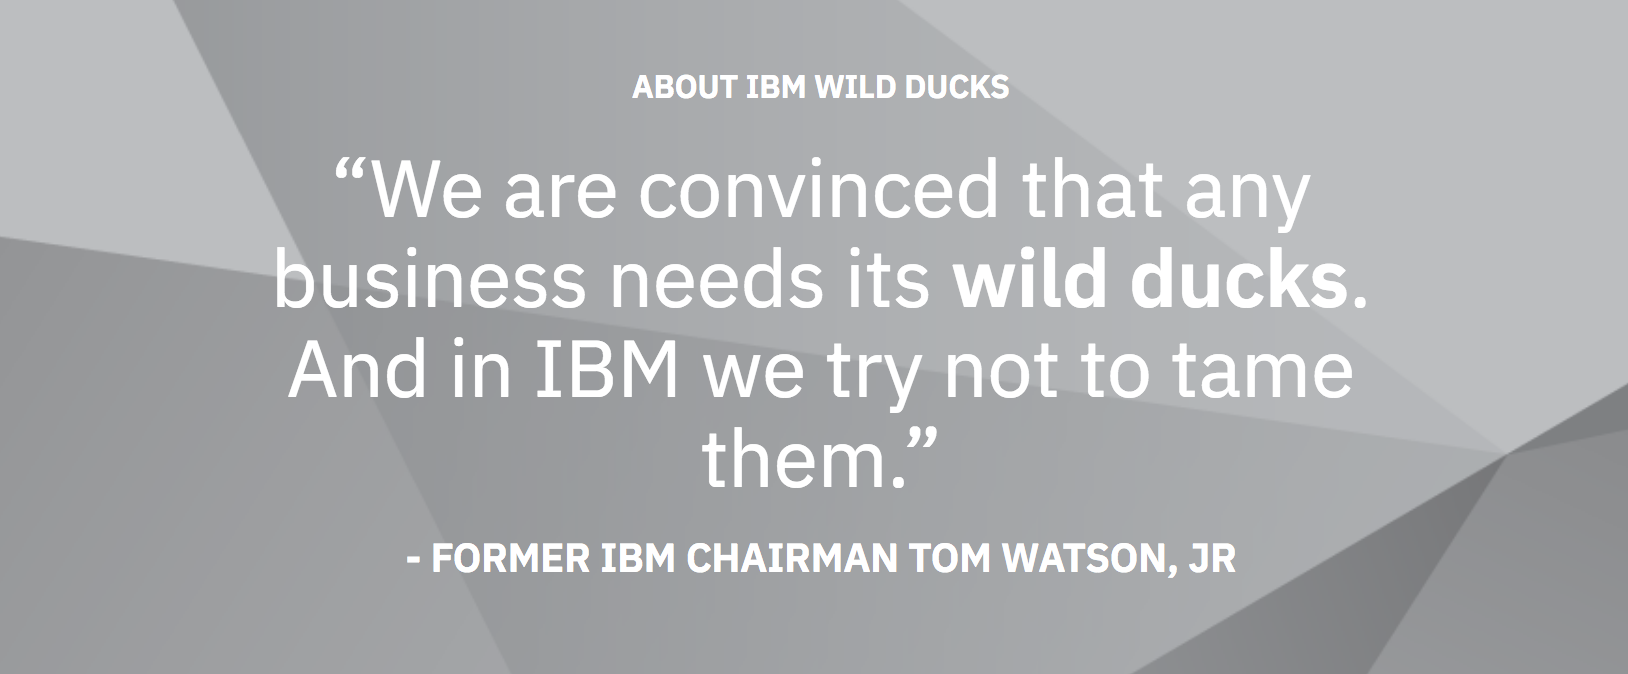 IBM_Wild_Ducks_-_About_IBM_Wild_Ducks_Podcasts